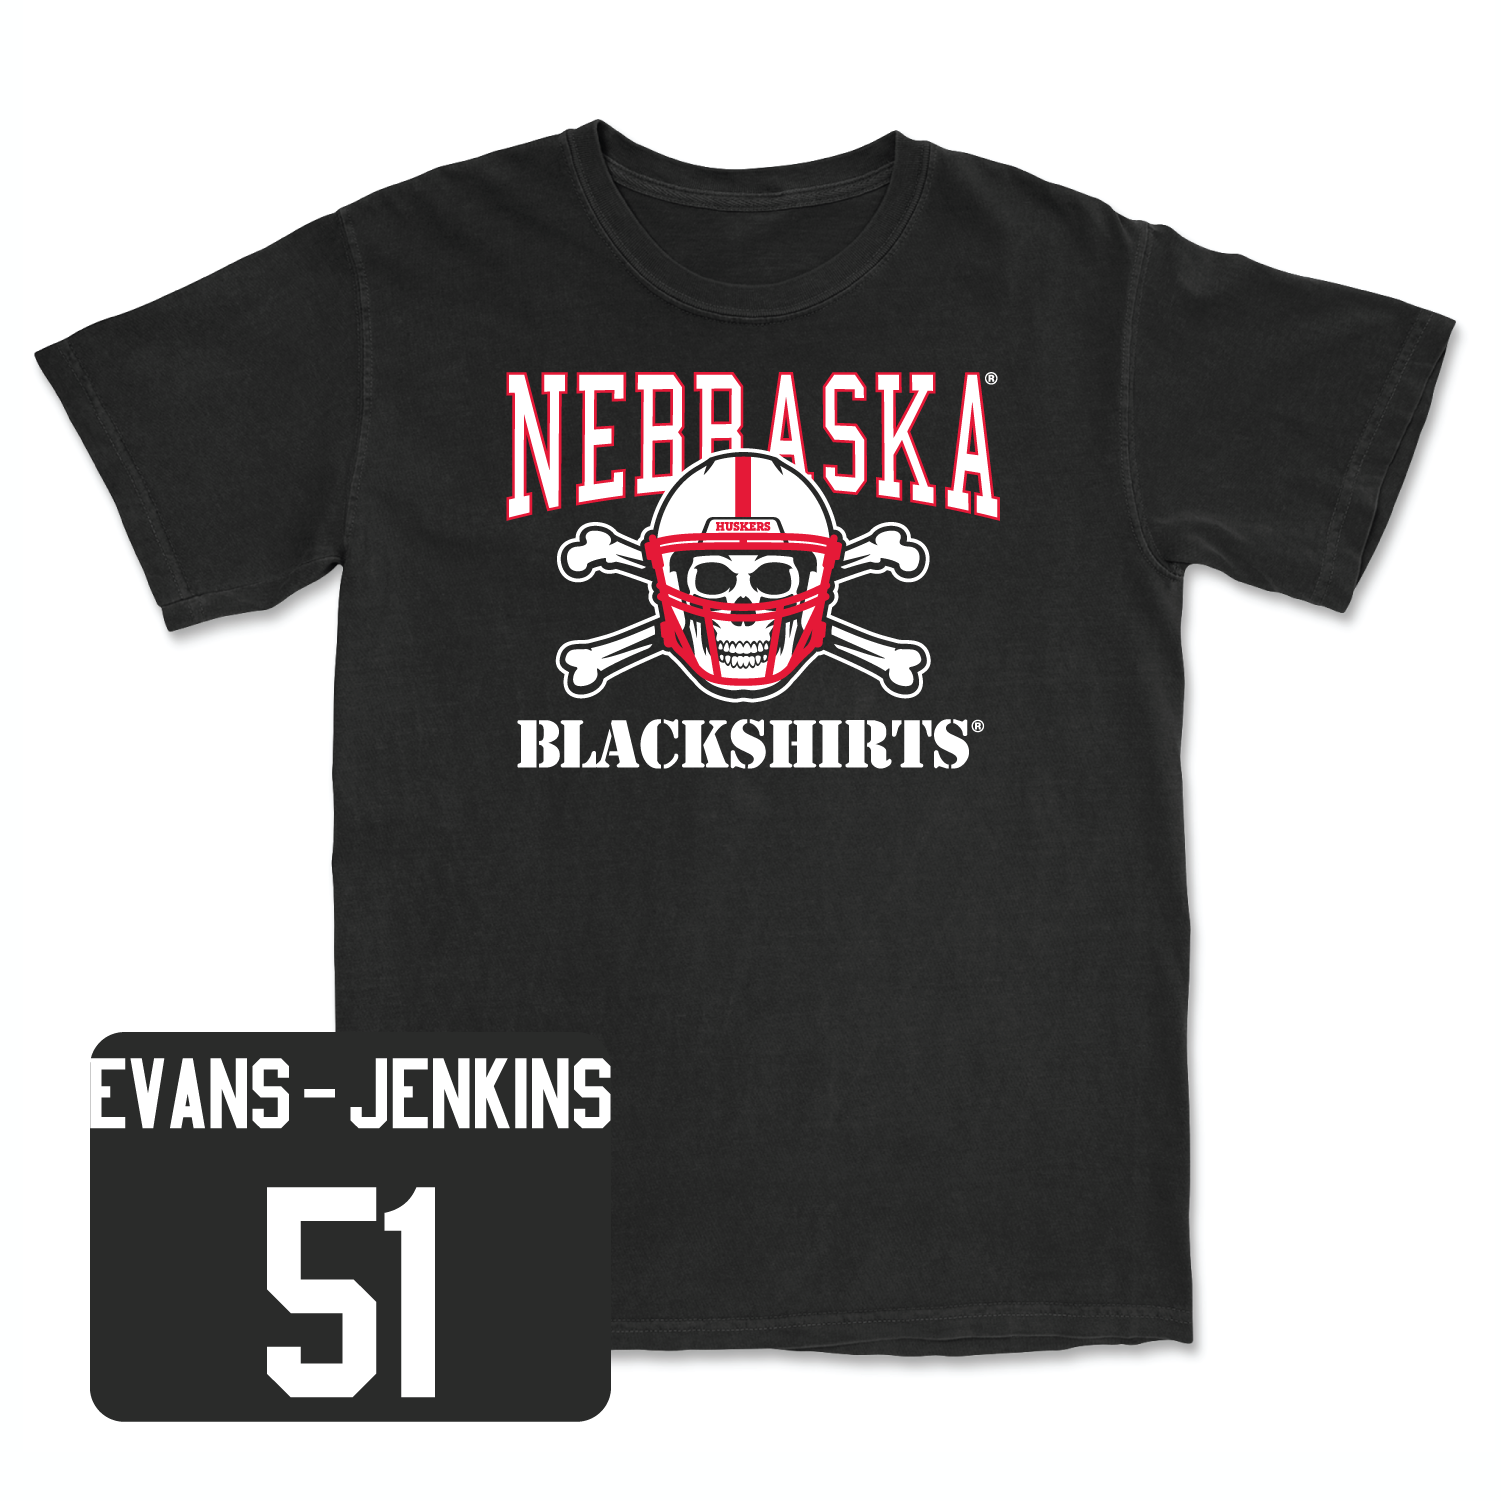 Black Football Blackshirts Tee 6 2X-Large / Justin Evans-Jenkins | #51